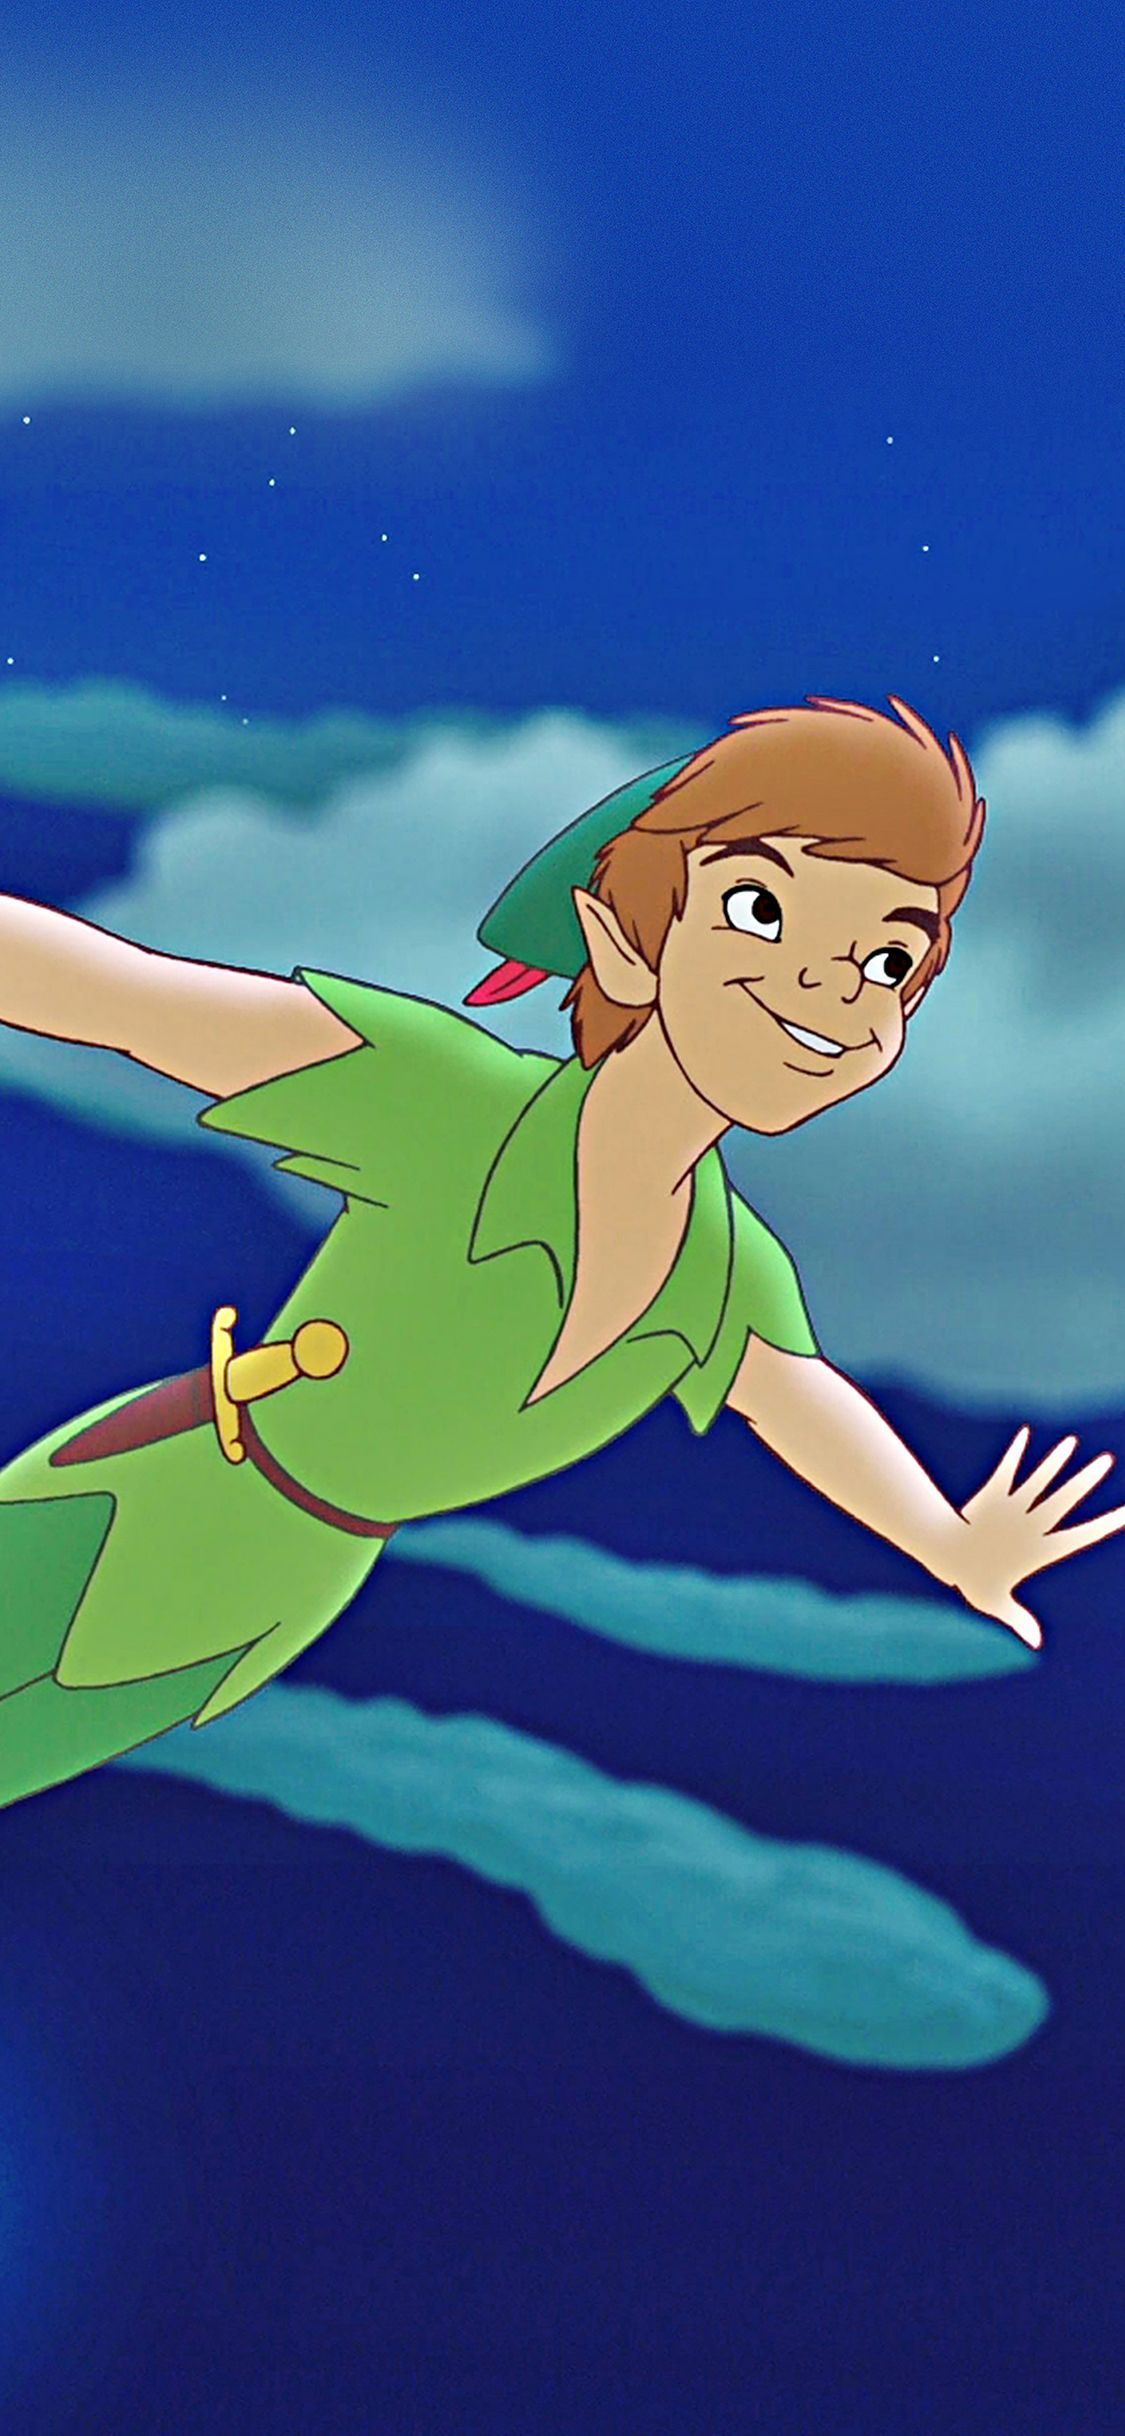 Peter Pan flying in the sky - Peter Pan